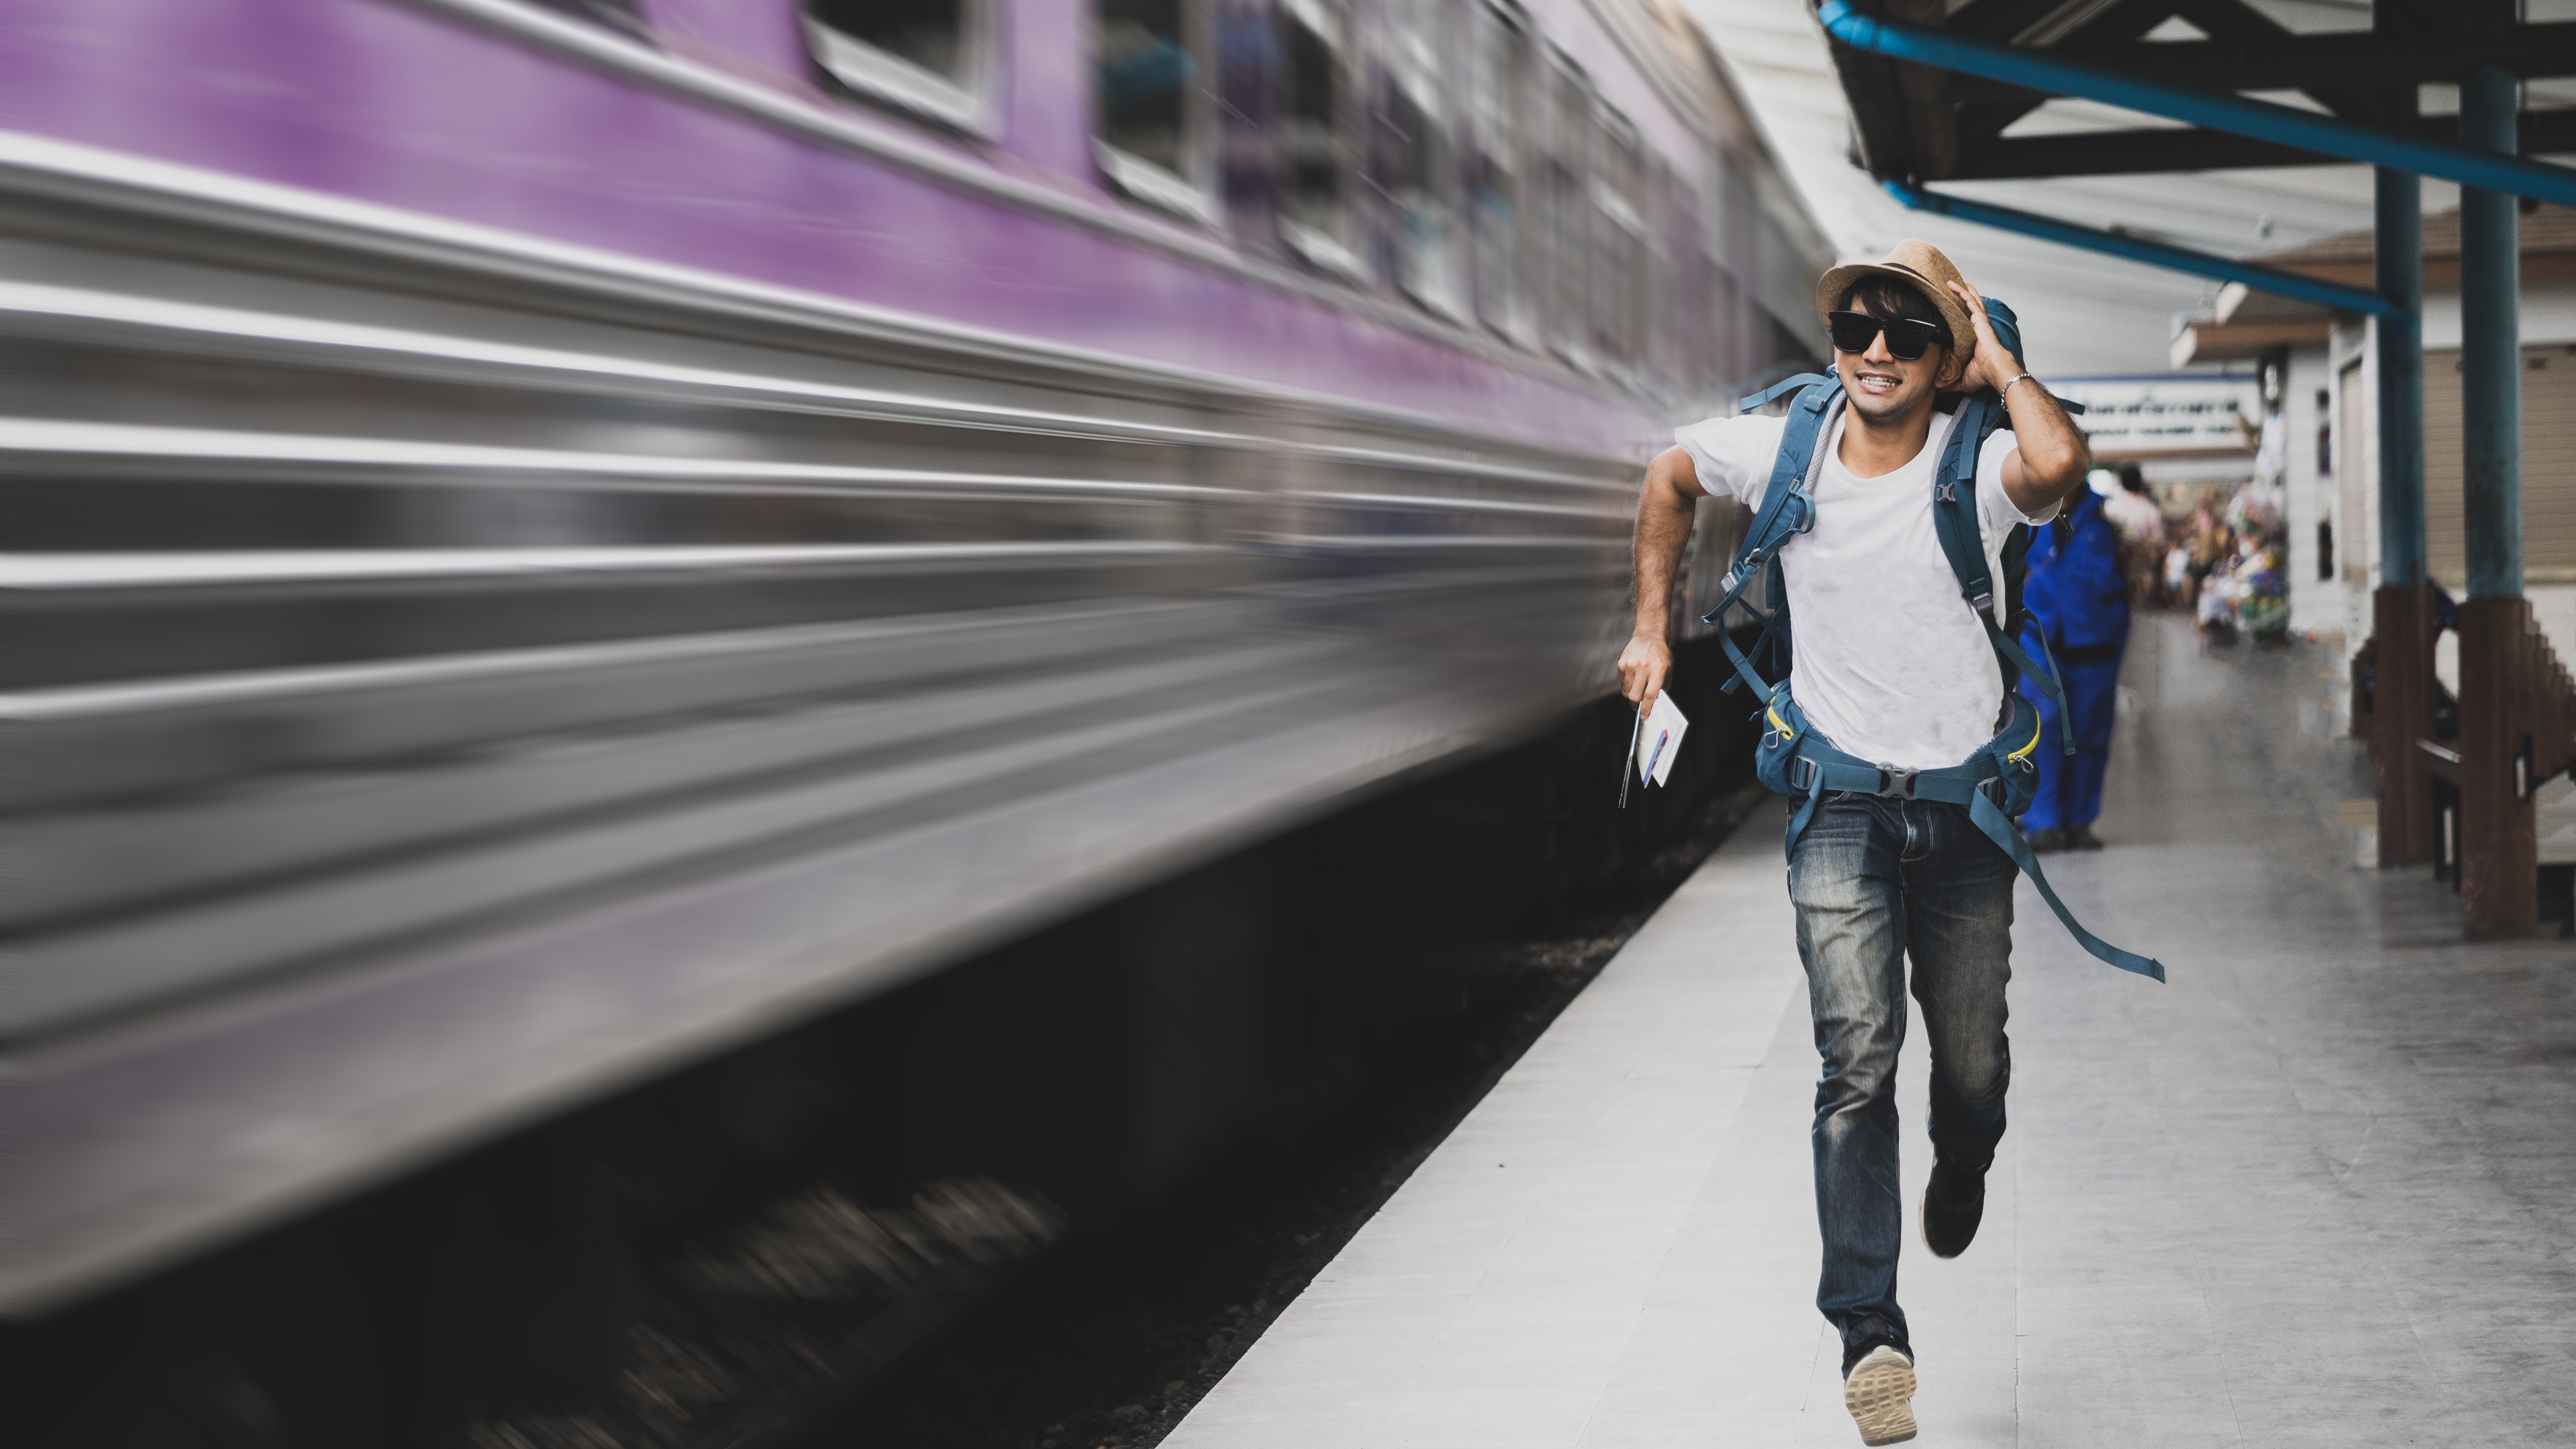 Tourist running after a train